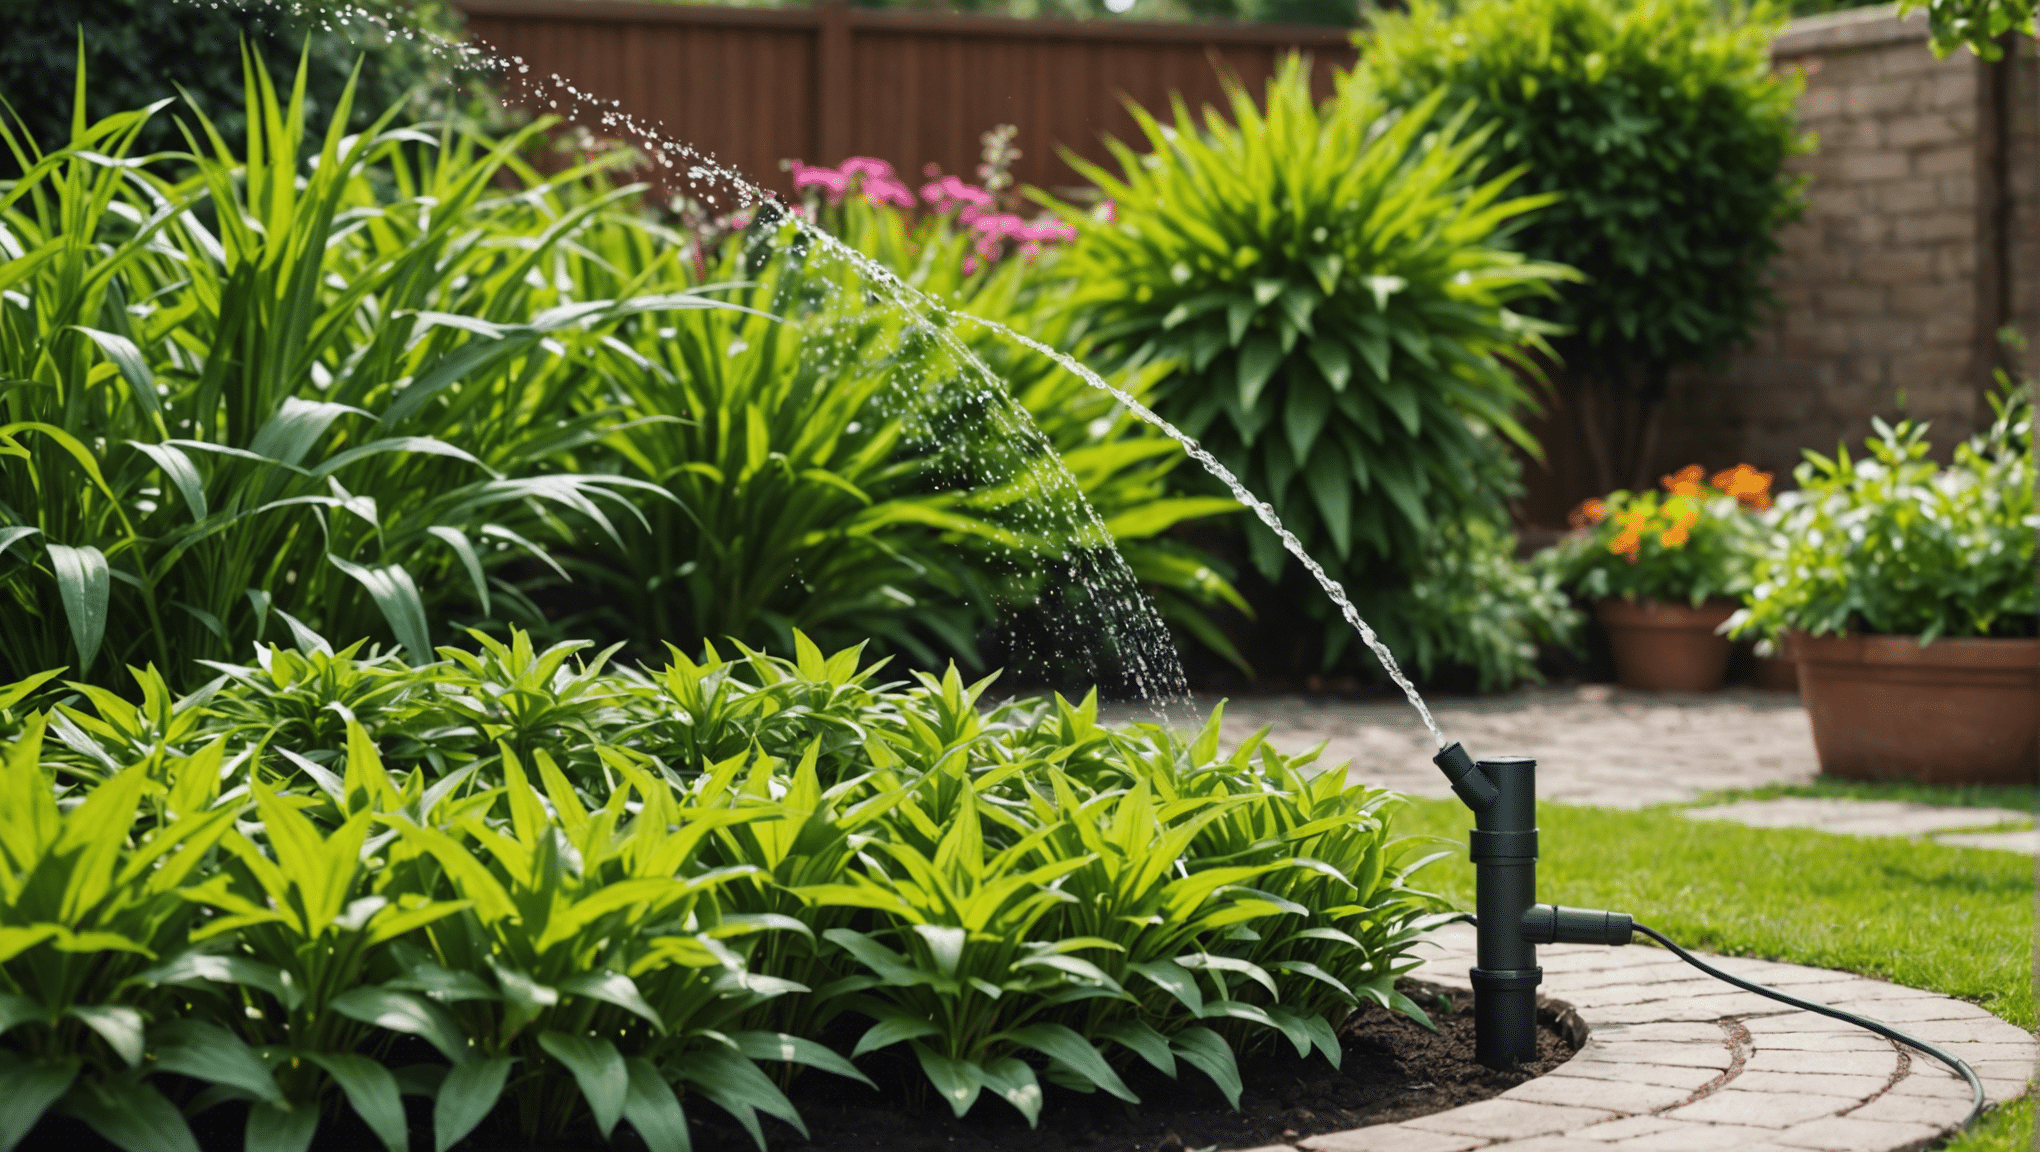 découvrez les avantages et les raisons de choisir un système d'arrosage automatique pour votre jardin ou votre espace extérieur. économisez du temps et de l'eau tout en profitant d'une belle pelouse et de plantes en santé.